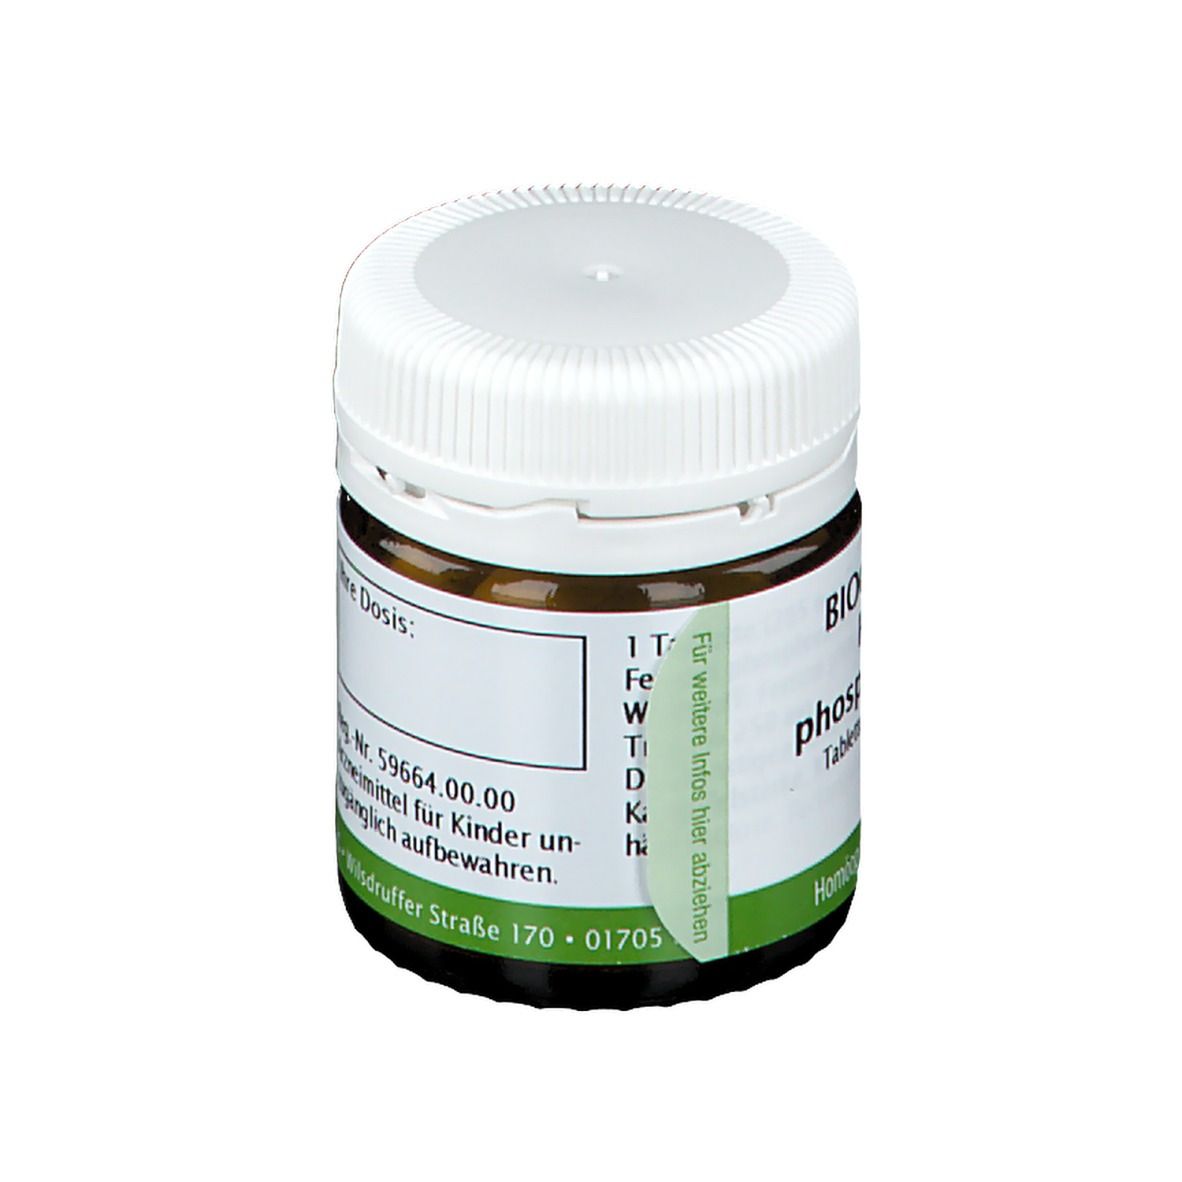 Bombastus Biochemie 3 Ferrum phosphoricum D 6 Tabletten